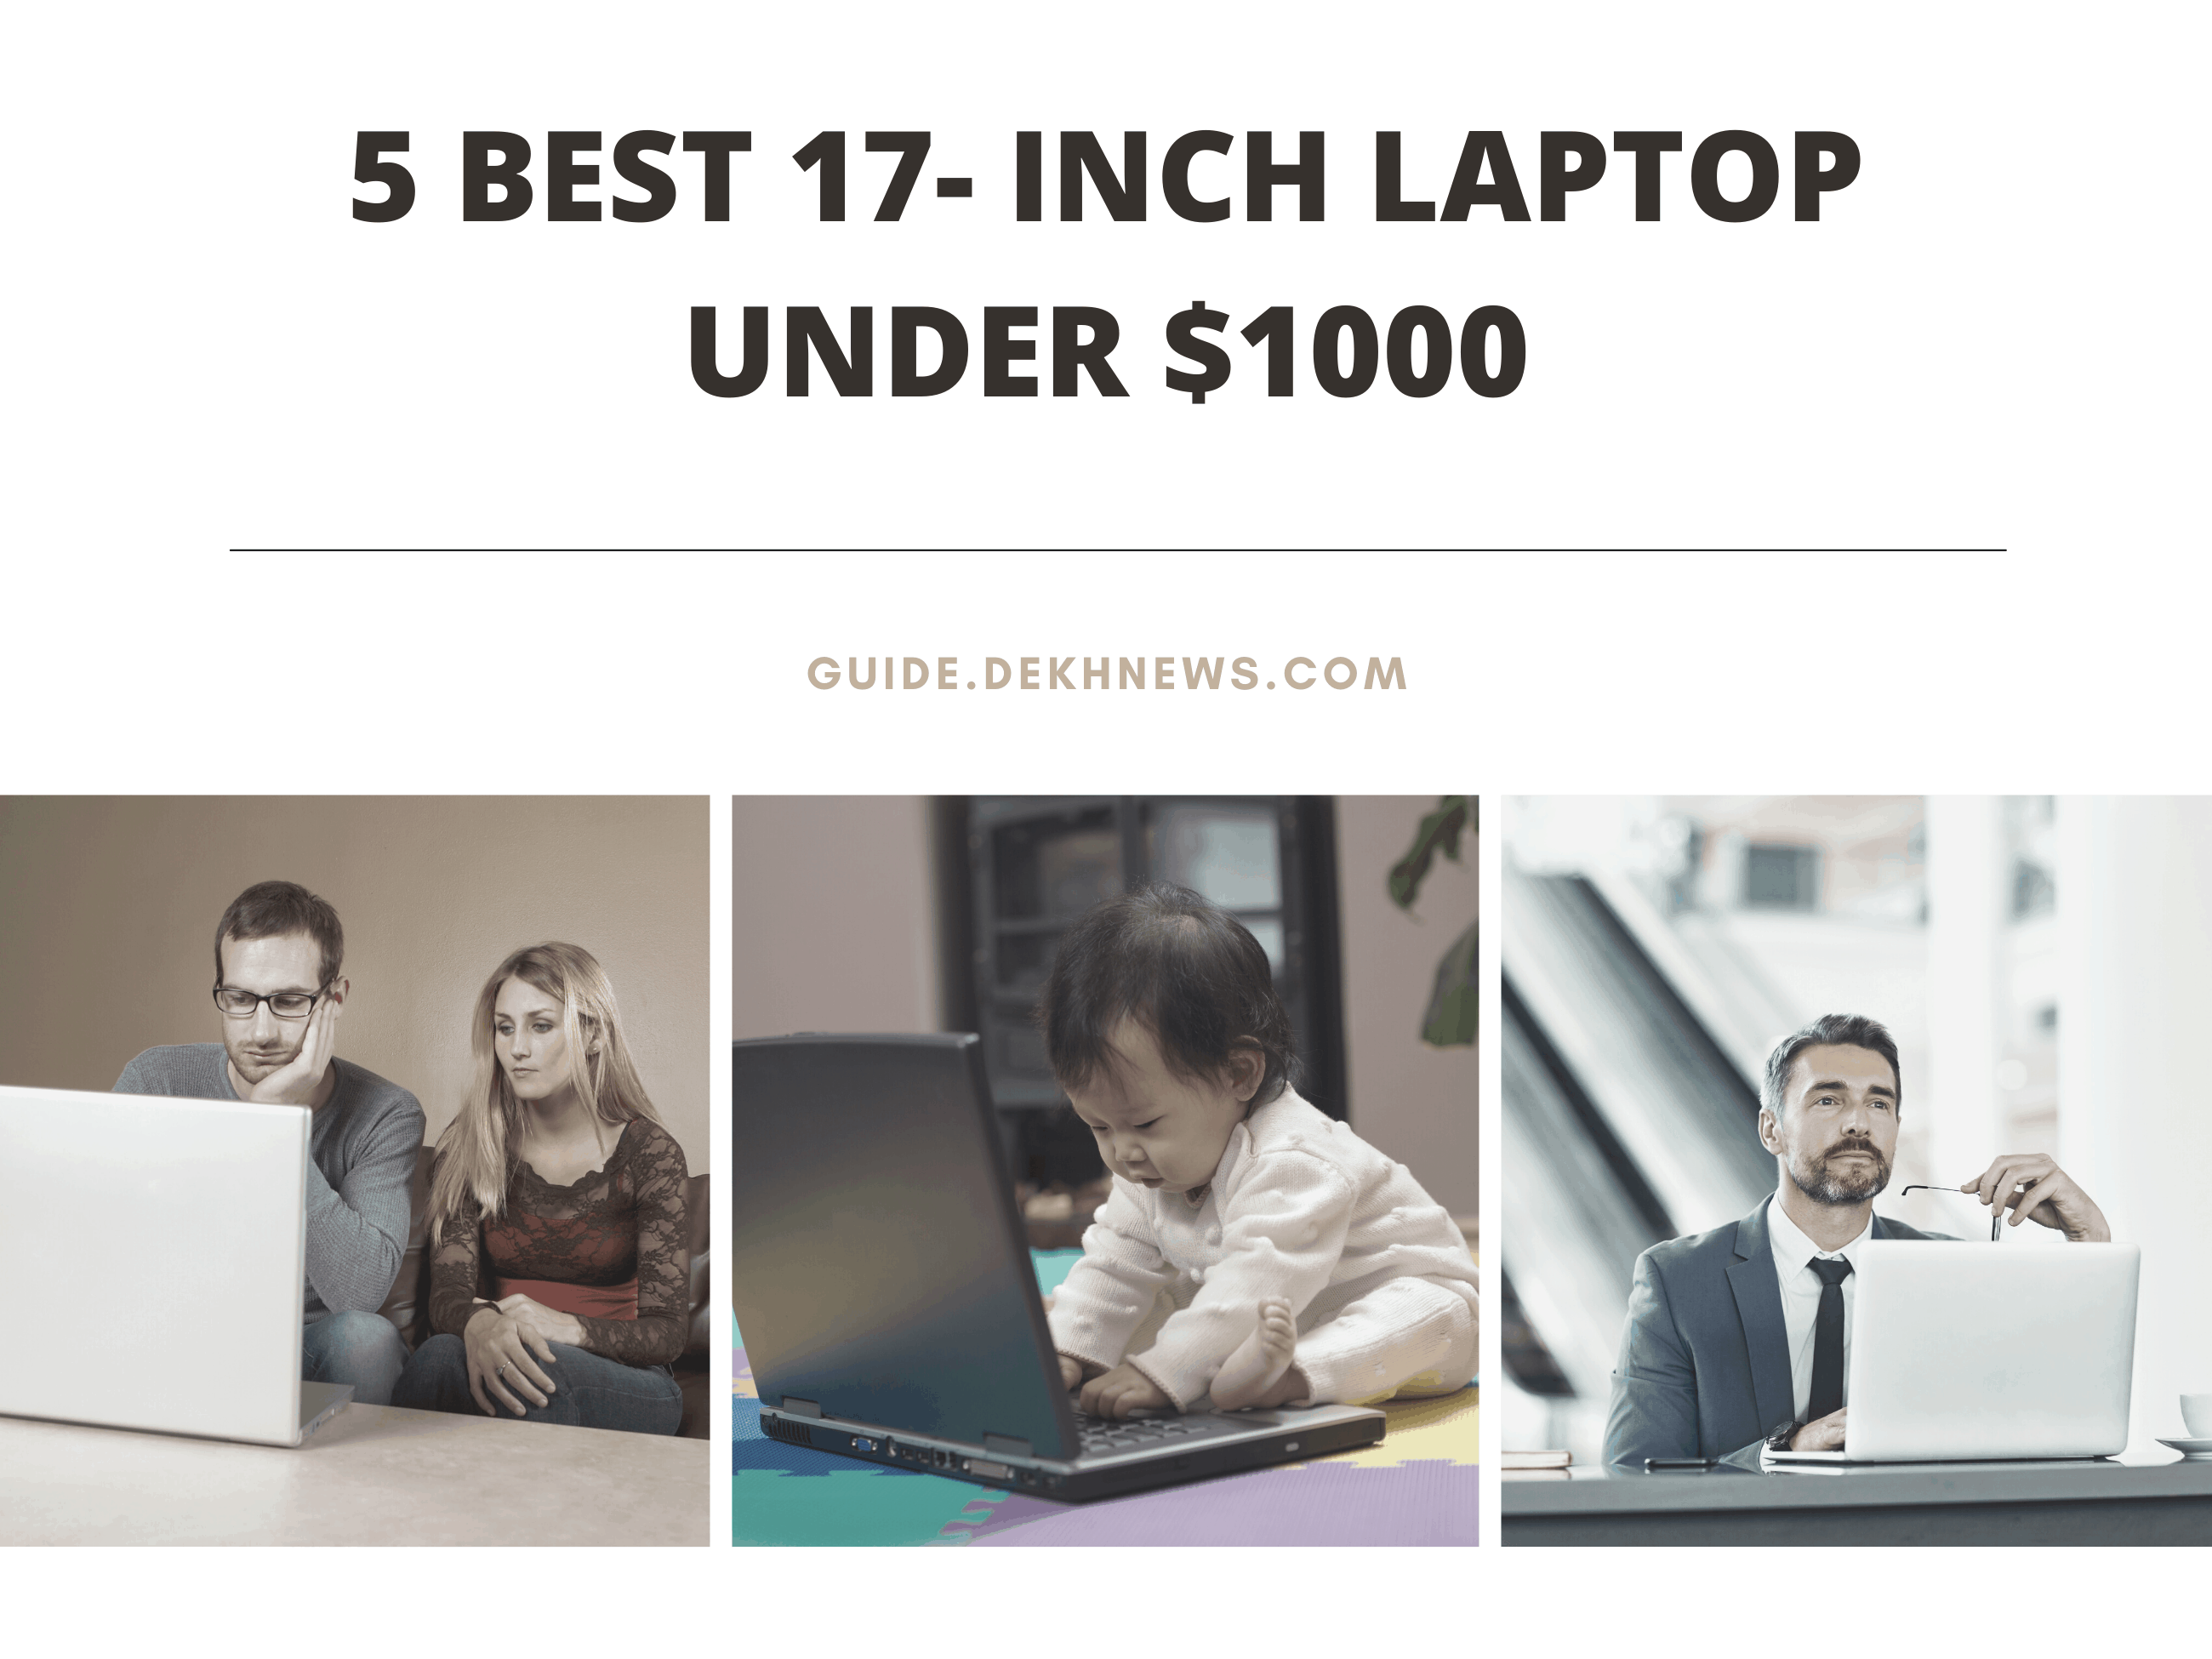 5 Best 17- inch Laptop under $1000